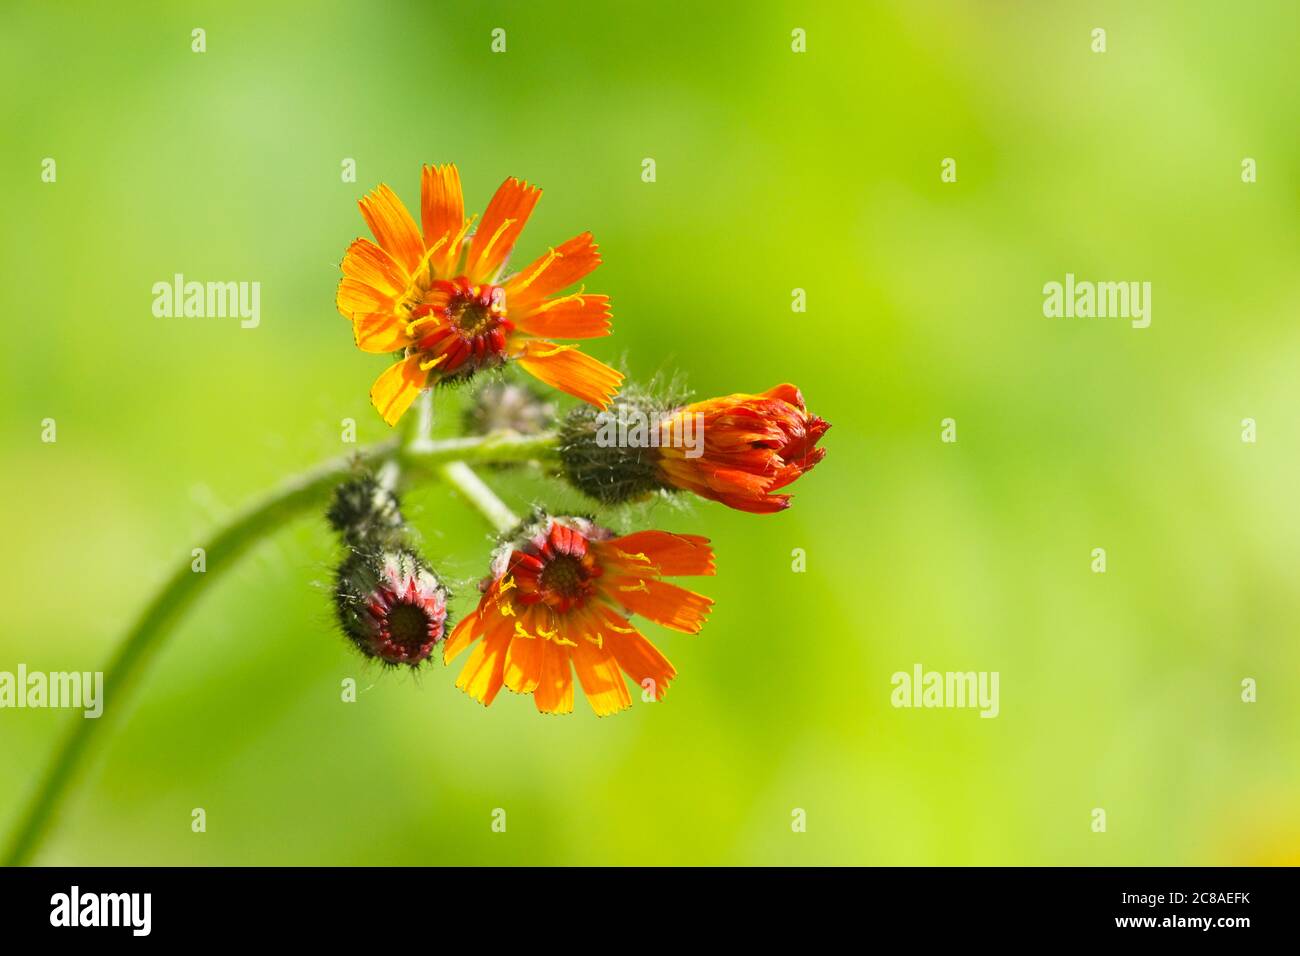 L'erba d'arancia (Pilosella aurantiaca) conosciuta anche come volpe e cubetti, un fiore selvatico arancione originario dell'Europa centrale e meridionale. Simile a dente di leone. Foto Stock